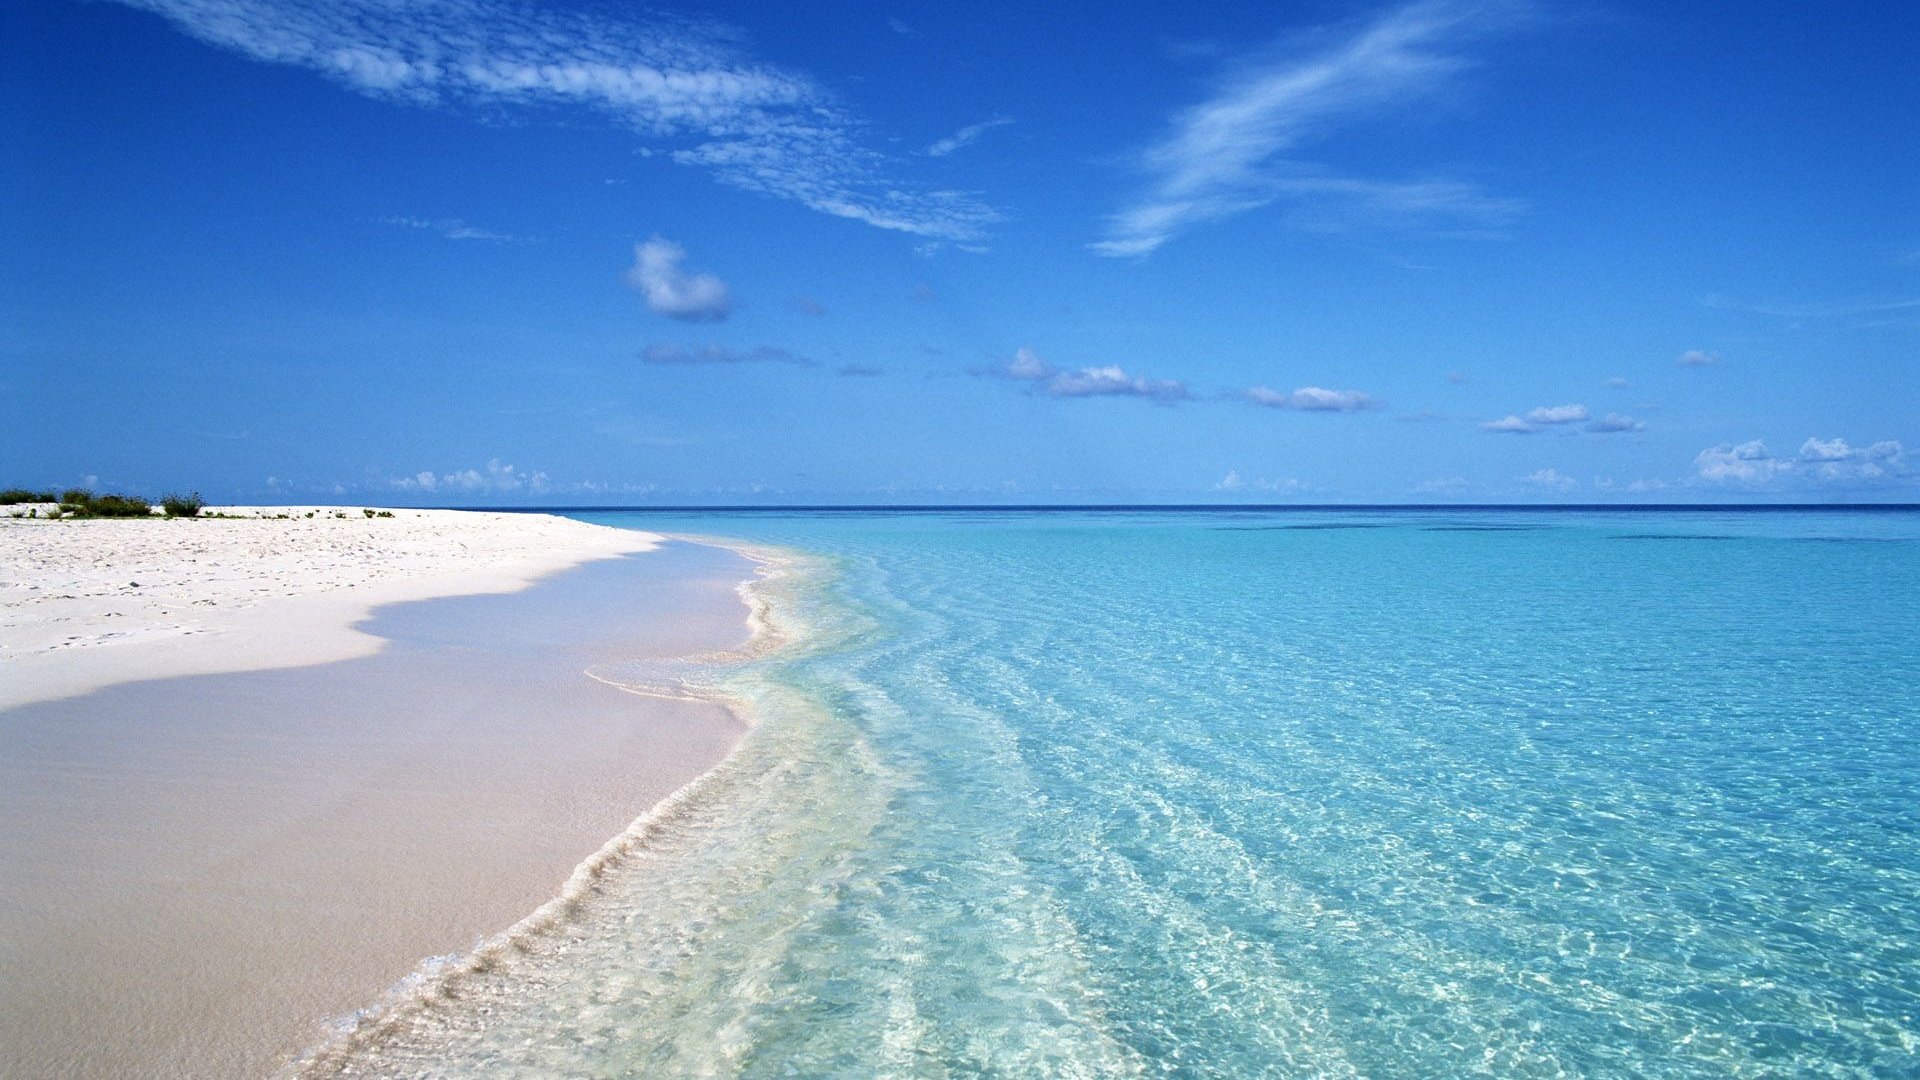 Bãi biển xanh với bầu trời xanh rực rỡ chắc chắn sẽ làm say đắm lòng người với vẻ đẹp vô cùng tuyệt vời. Hãy cùng tận hưởng một ngày nghỉ dưỡng trọn vẹn tại bãi biển xanh, tắm nắng, tắm biển và thư giãn với gia đình bạn.